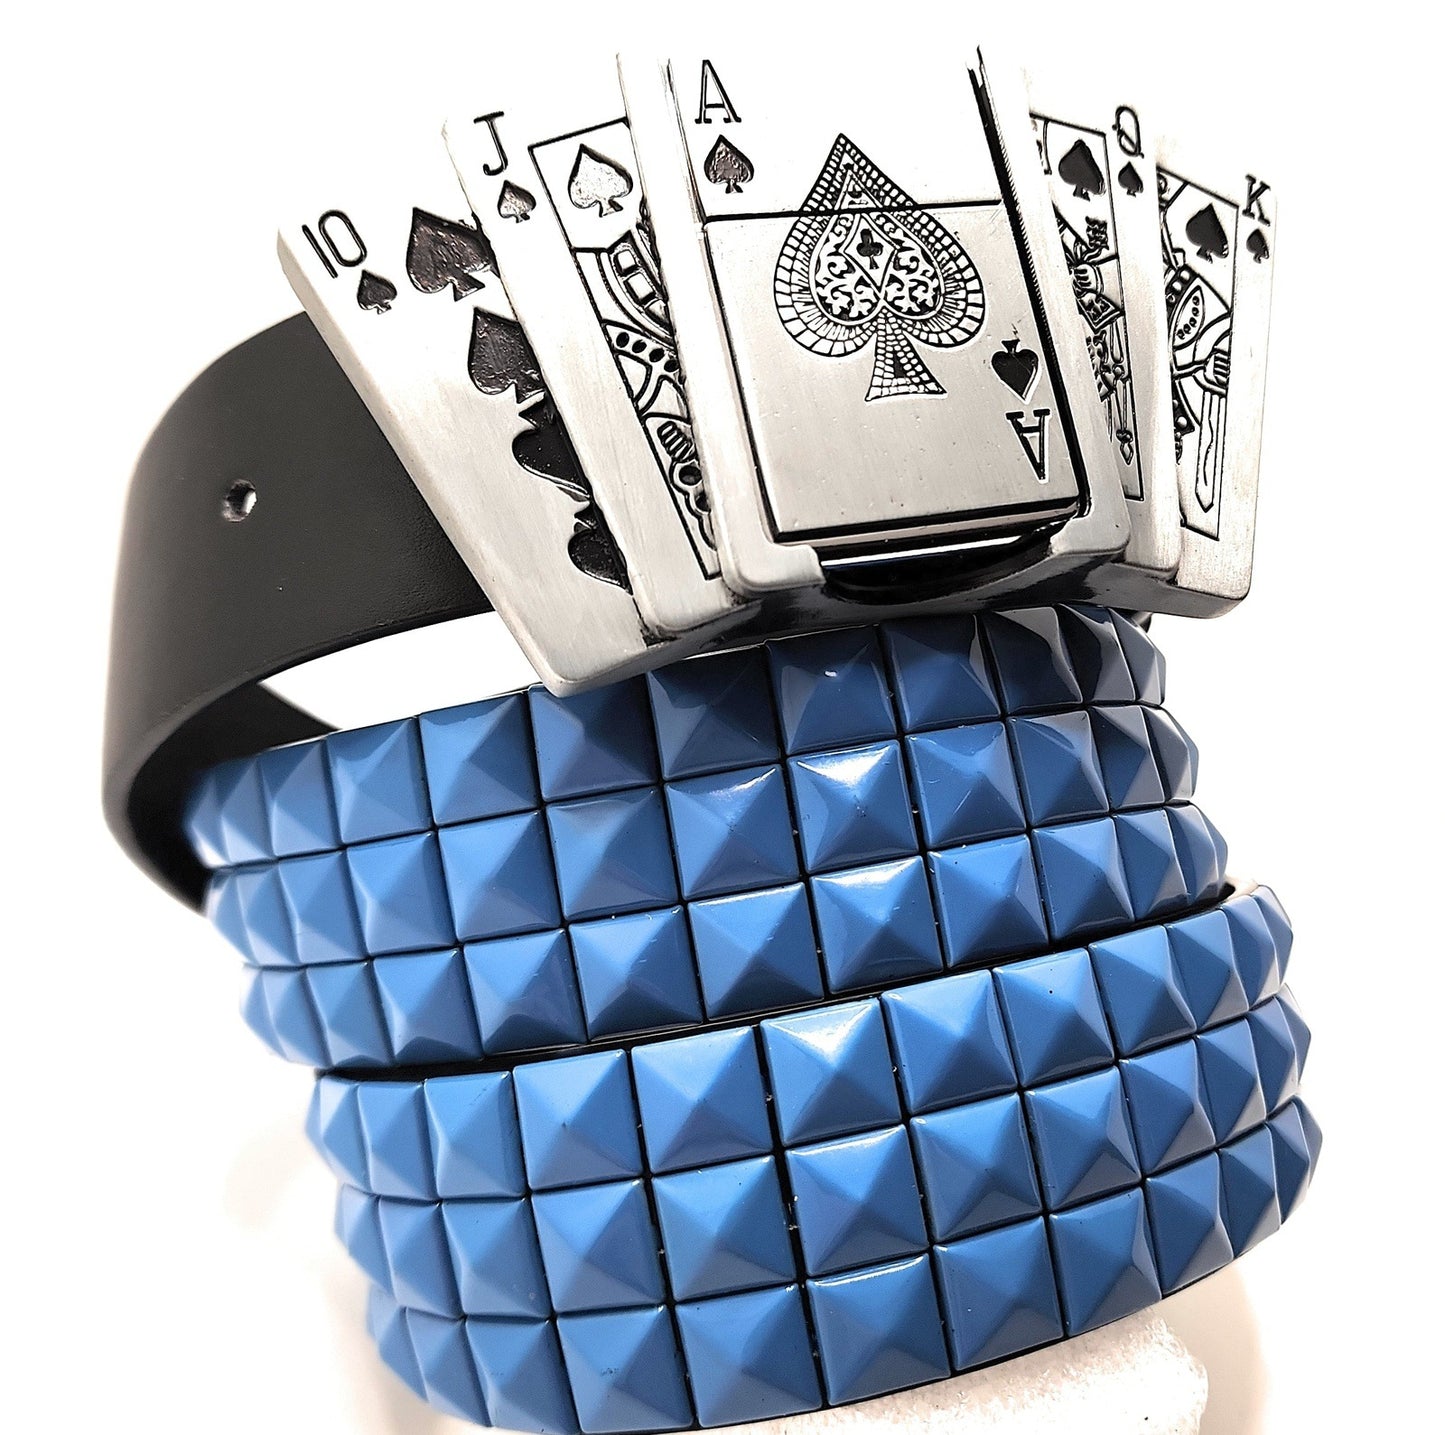 Royal Flush Lighter Belt Buckle and Black Pyramid Studded Leather Belt shop.AxeDr.com Belt Buckle, Belt with Buckle, Buckles with Belt, Cards, Gambling, Gift for Him, Hot Topic, Novelty,